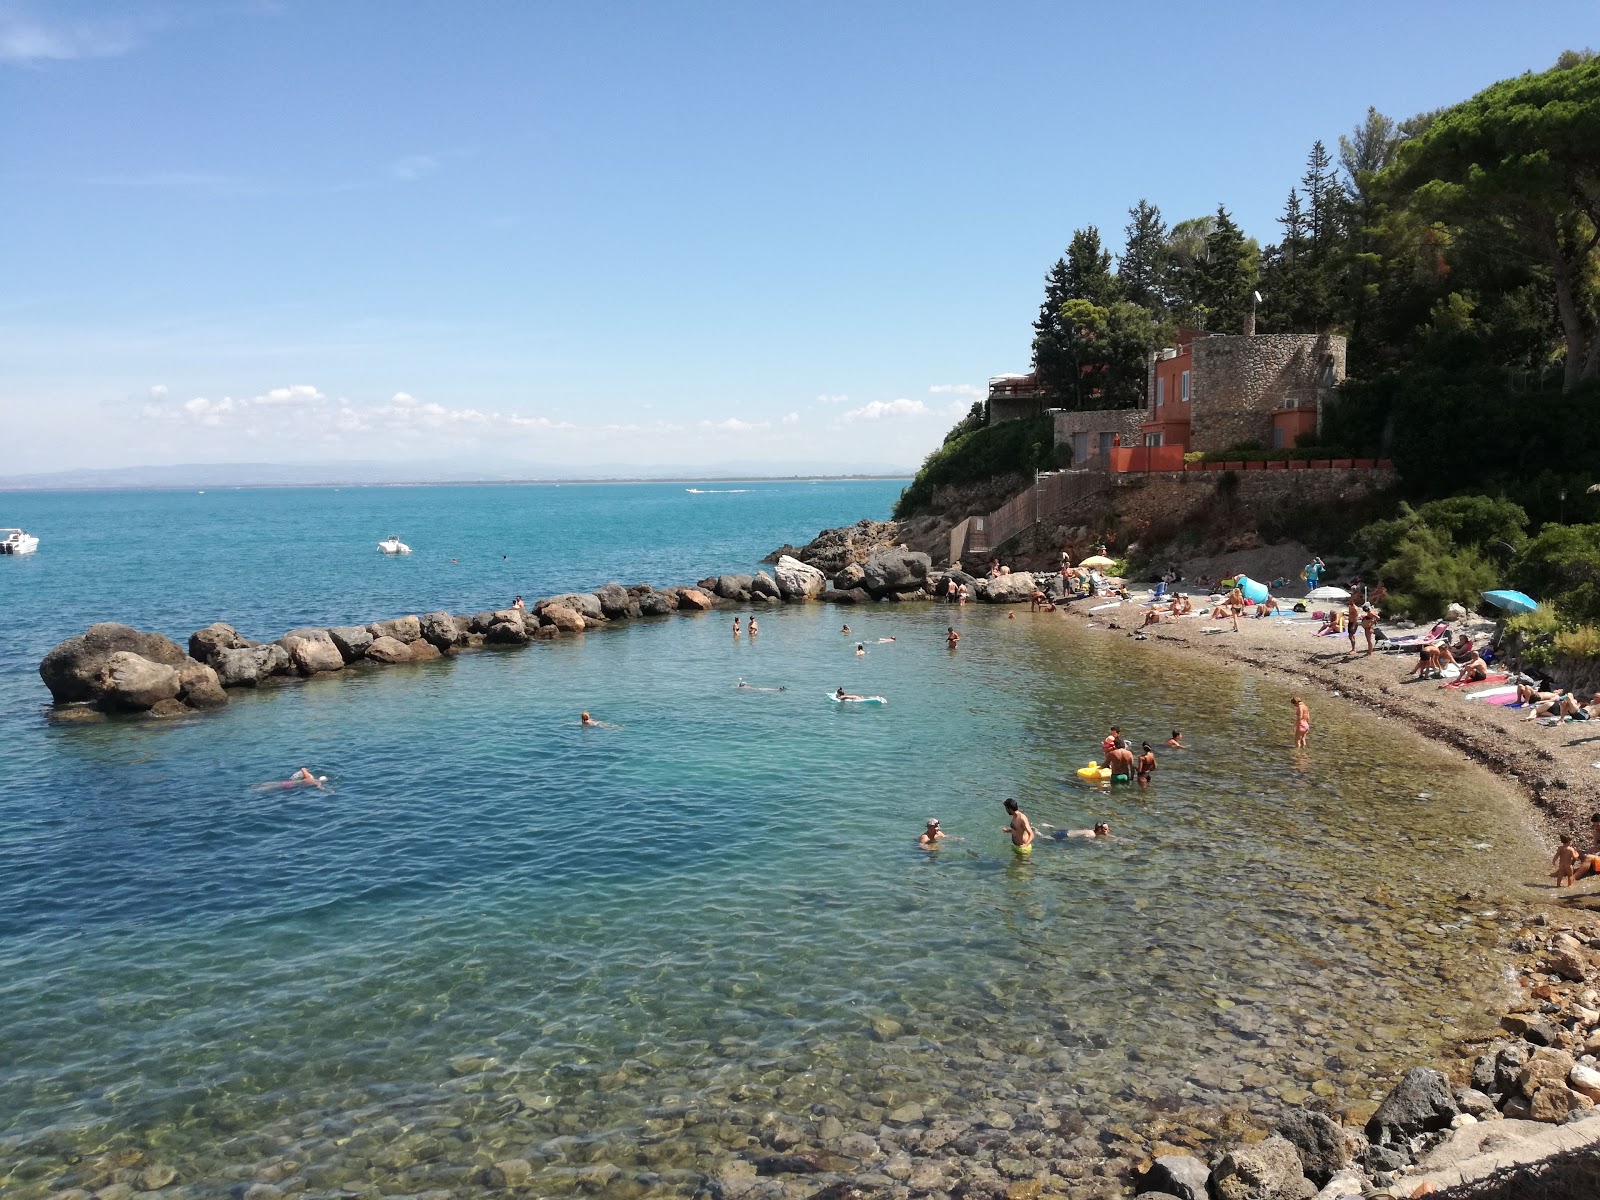 Foto av Spiaggia della Bionda med grå sand och stenar yta